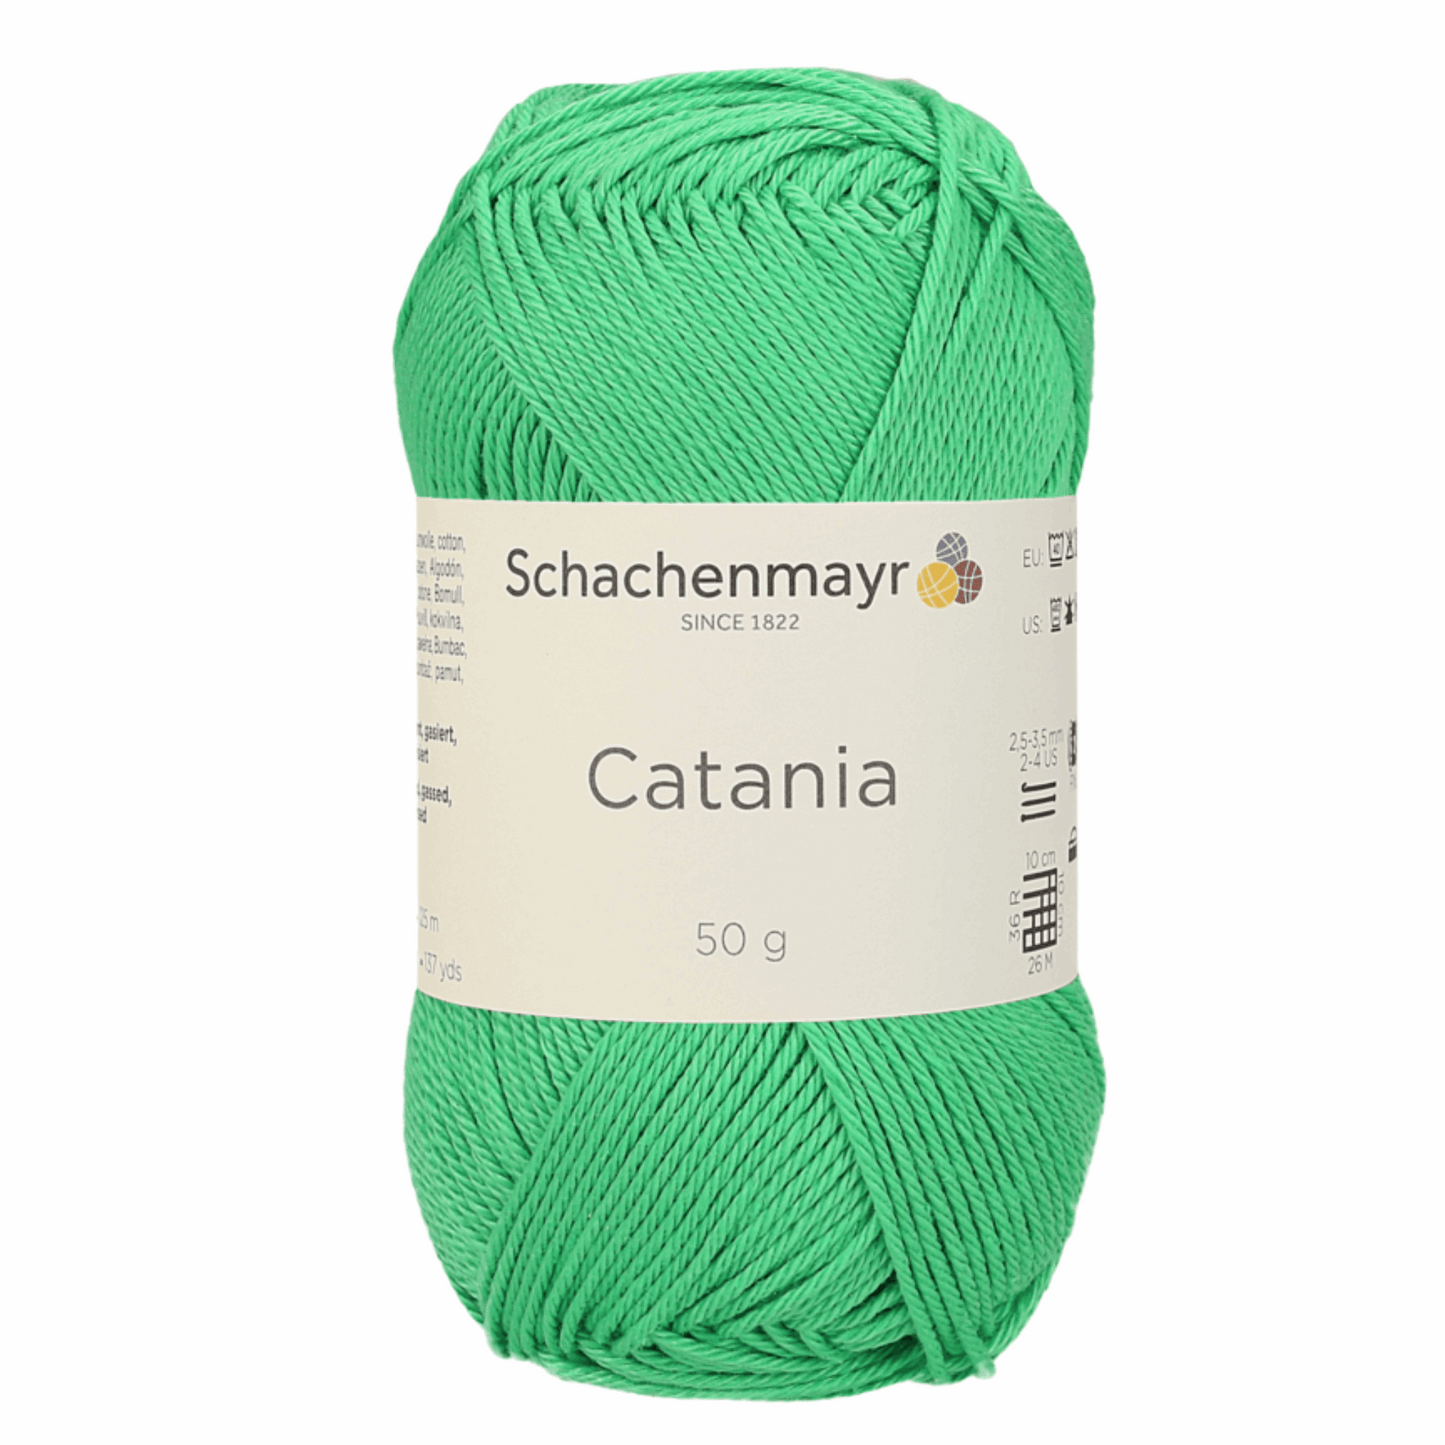 Catania 50g, 90344, Farbe 389, maigrün